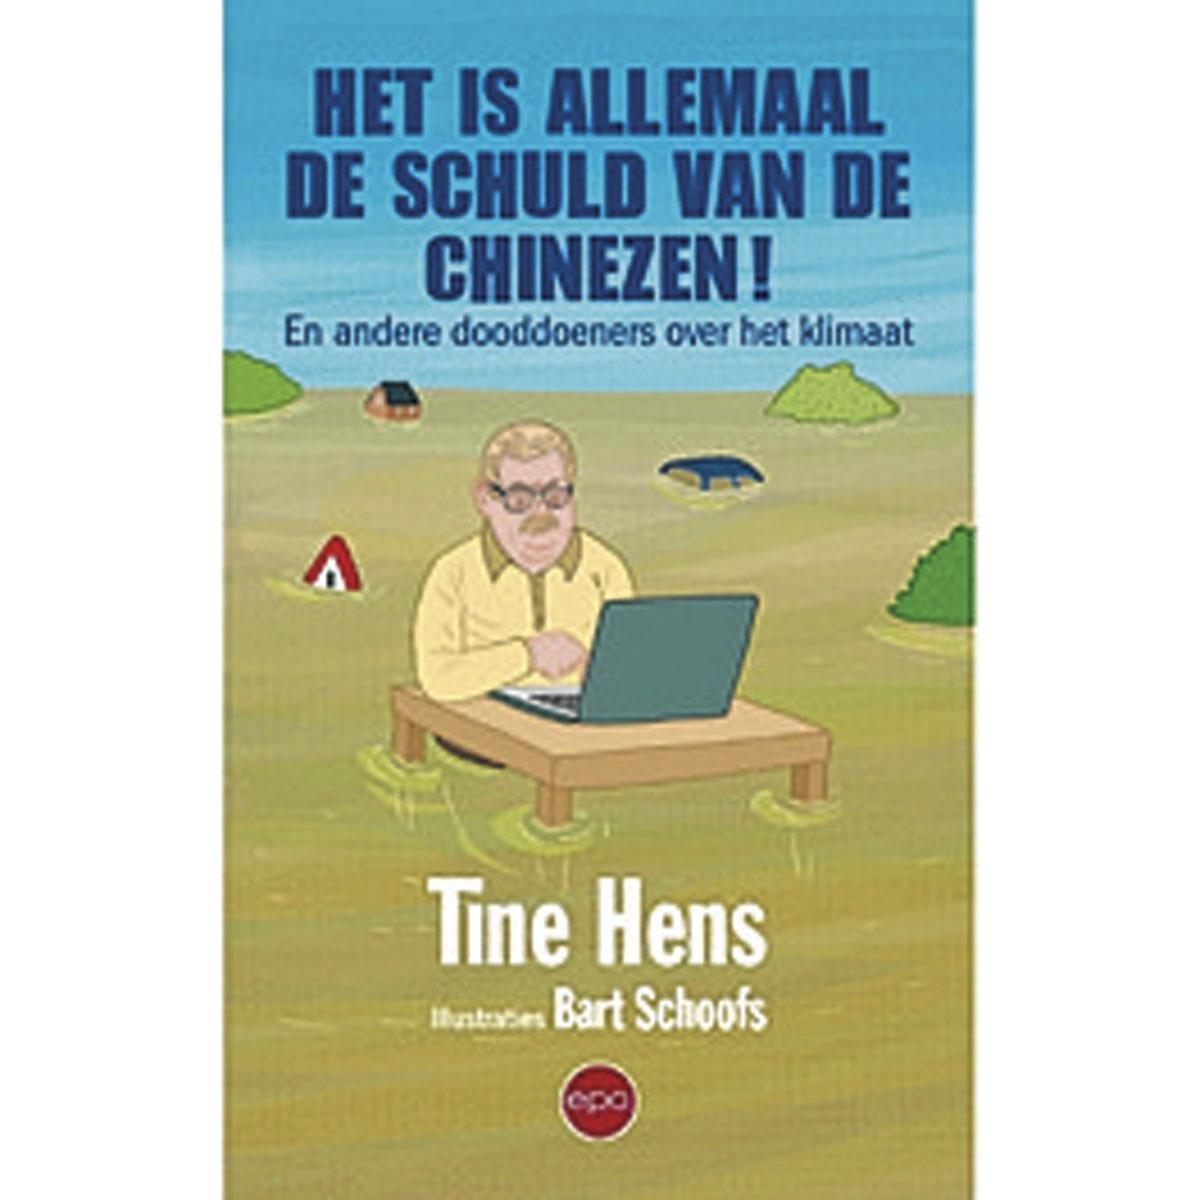 Tine Hens, Het is allemaal de schuld van de Chinezen! En andere dooddoeners over het klimaat, Epo, 260 blz., 20 euro.